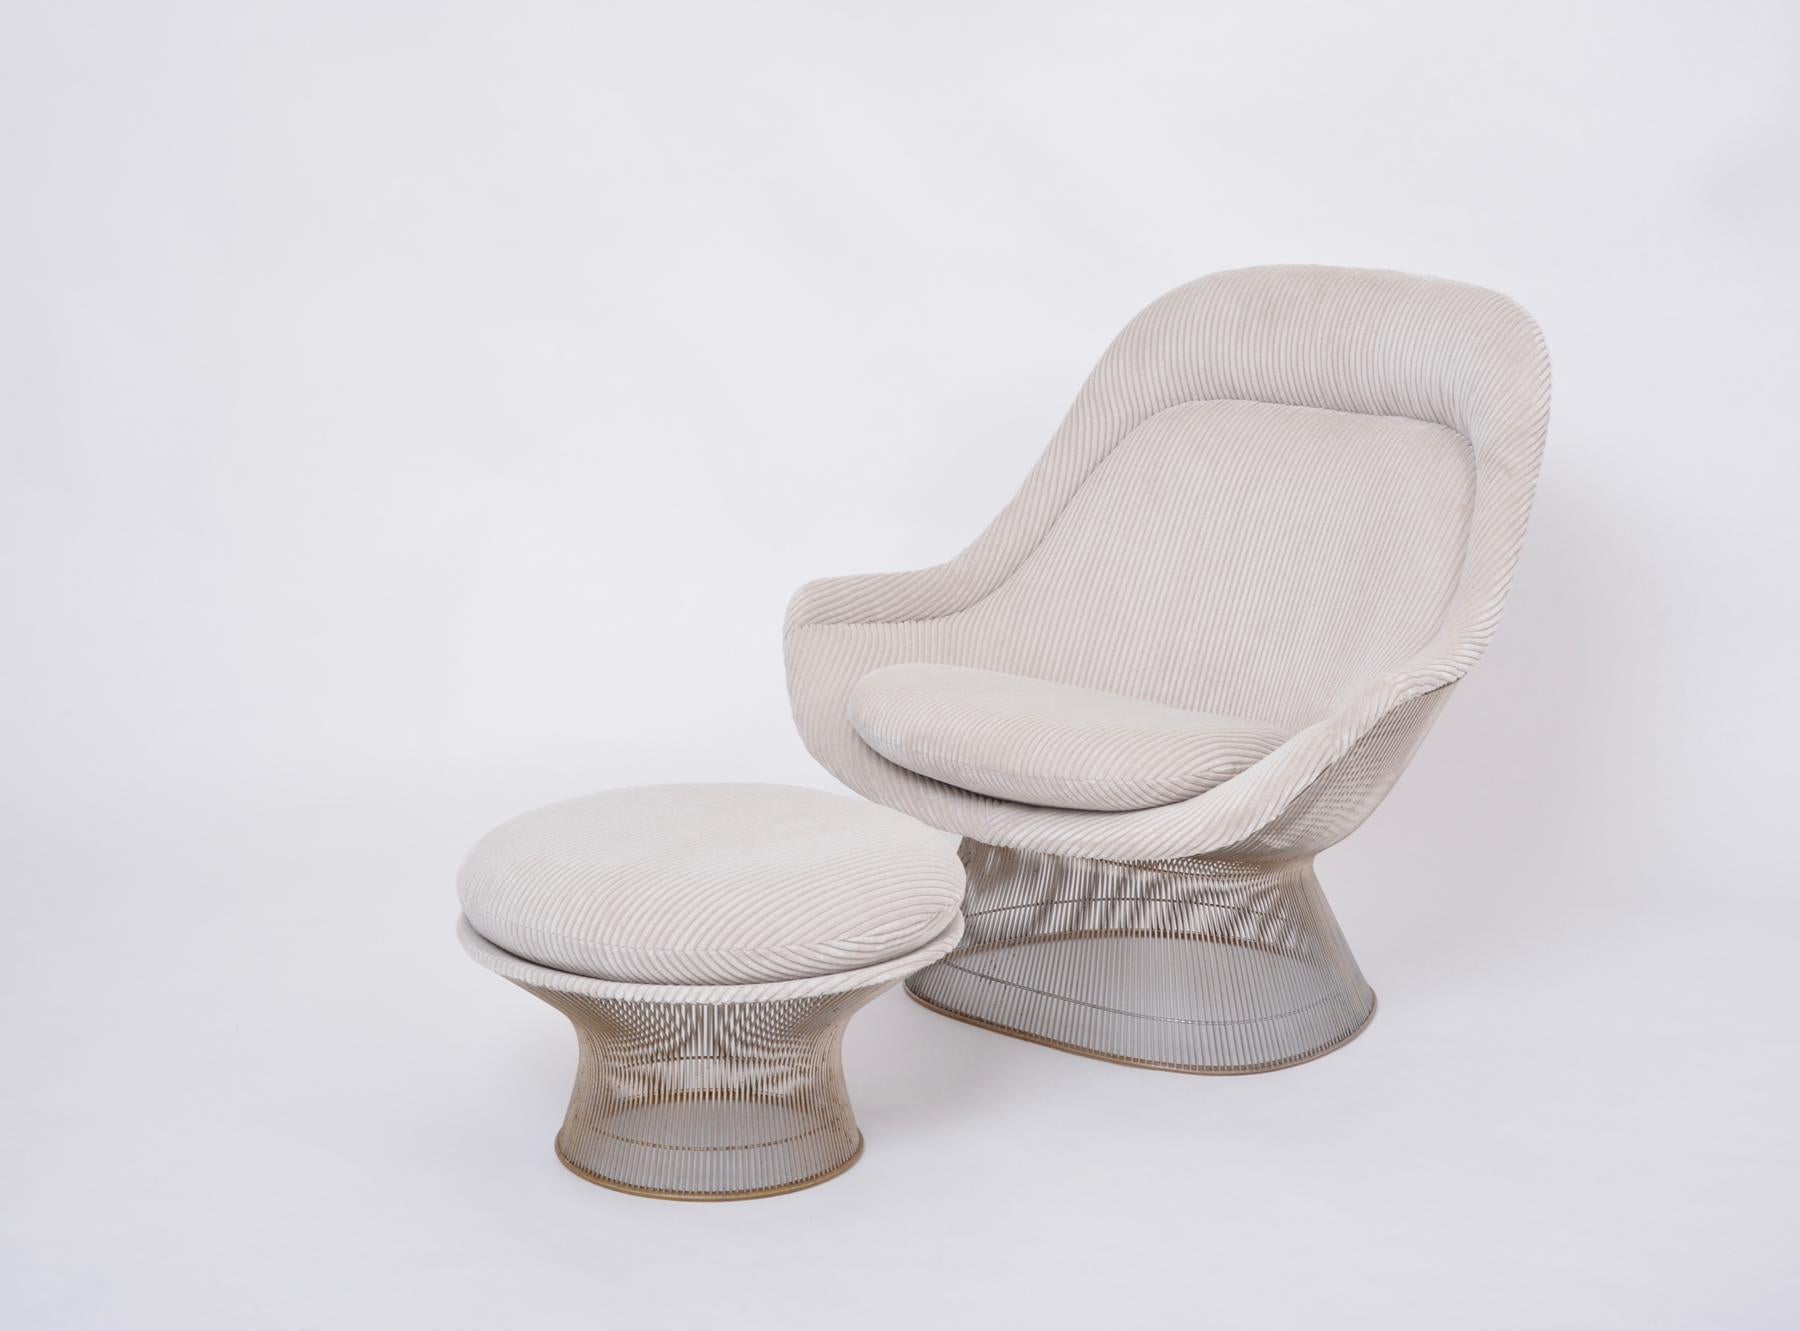 Ensemble de fauteuil et pouf Warren Platner vintage retapissés
Superbe ensemble d'une chaise facile Platner (modèle 1705 ; alias Easy Lounge Chair) retapissée en cordon large beige clair velouté, également connu sous le nom de cordon de câble, avec